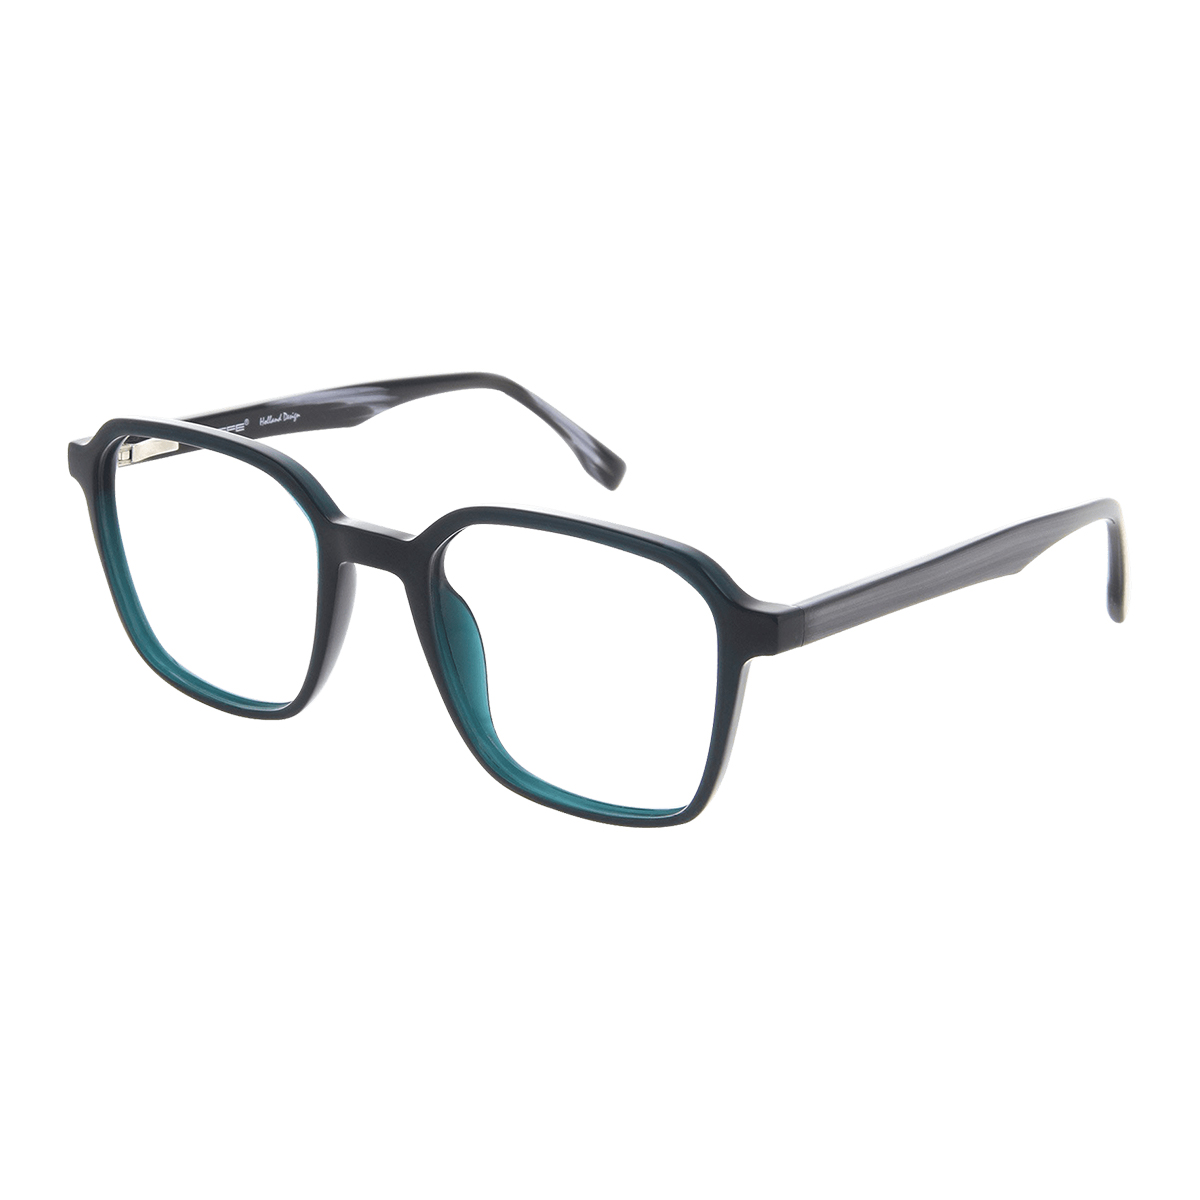 Syme - Rectangle Green Reading Glasses for Men & Women